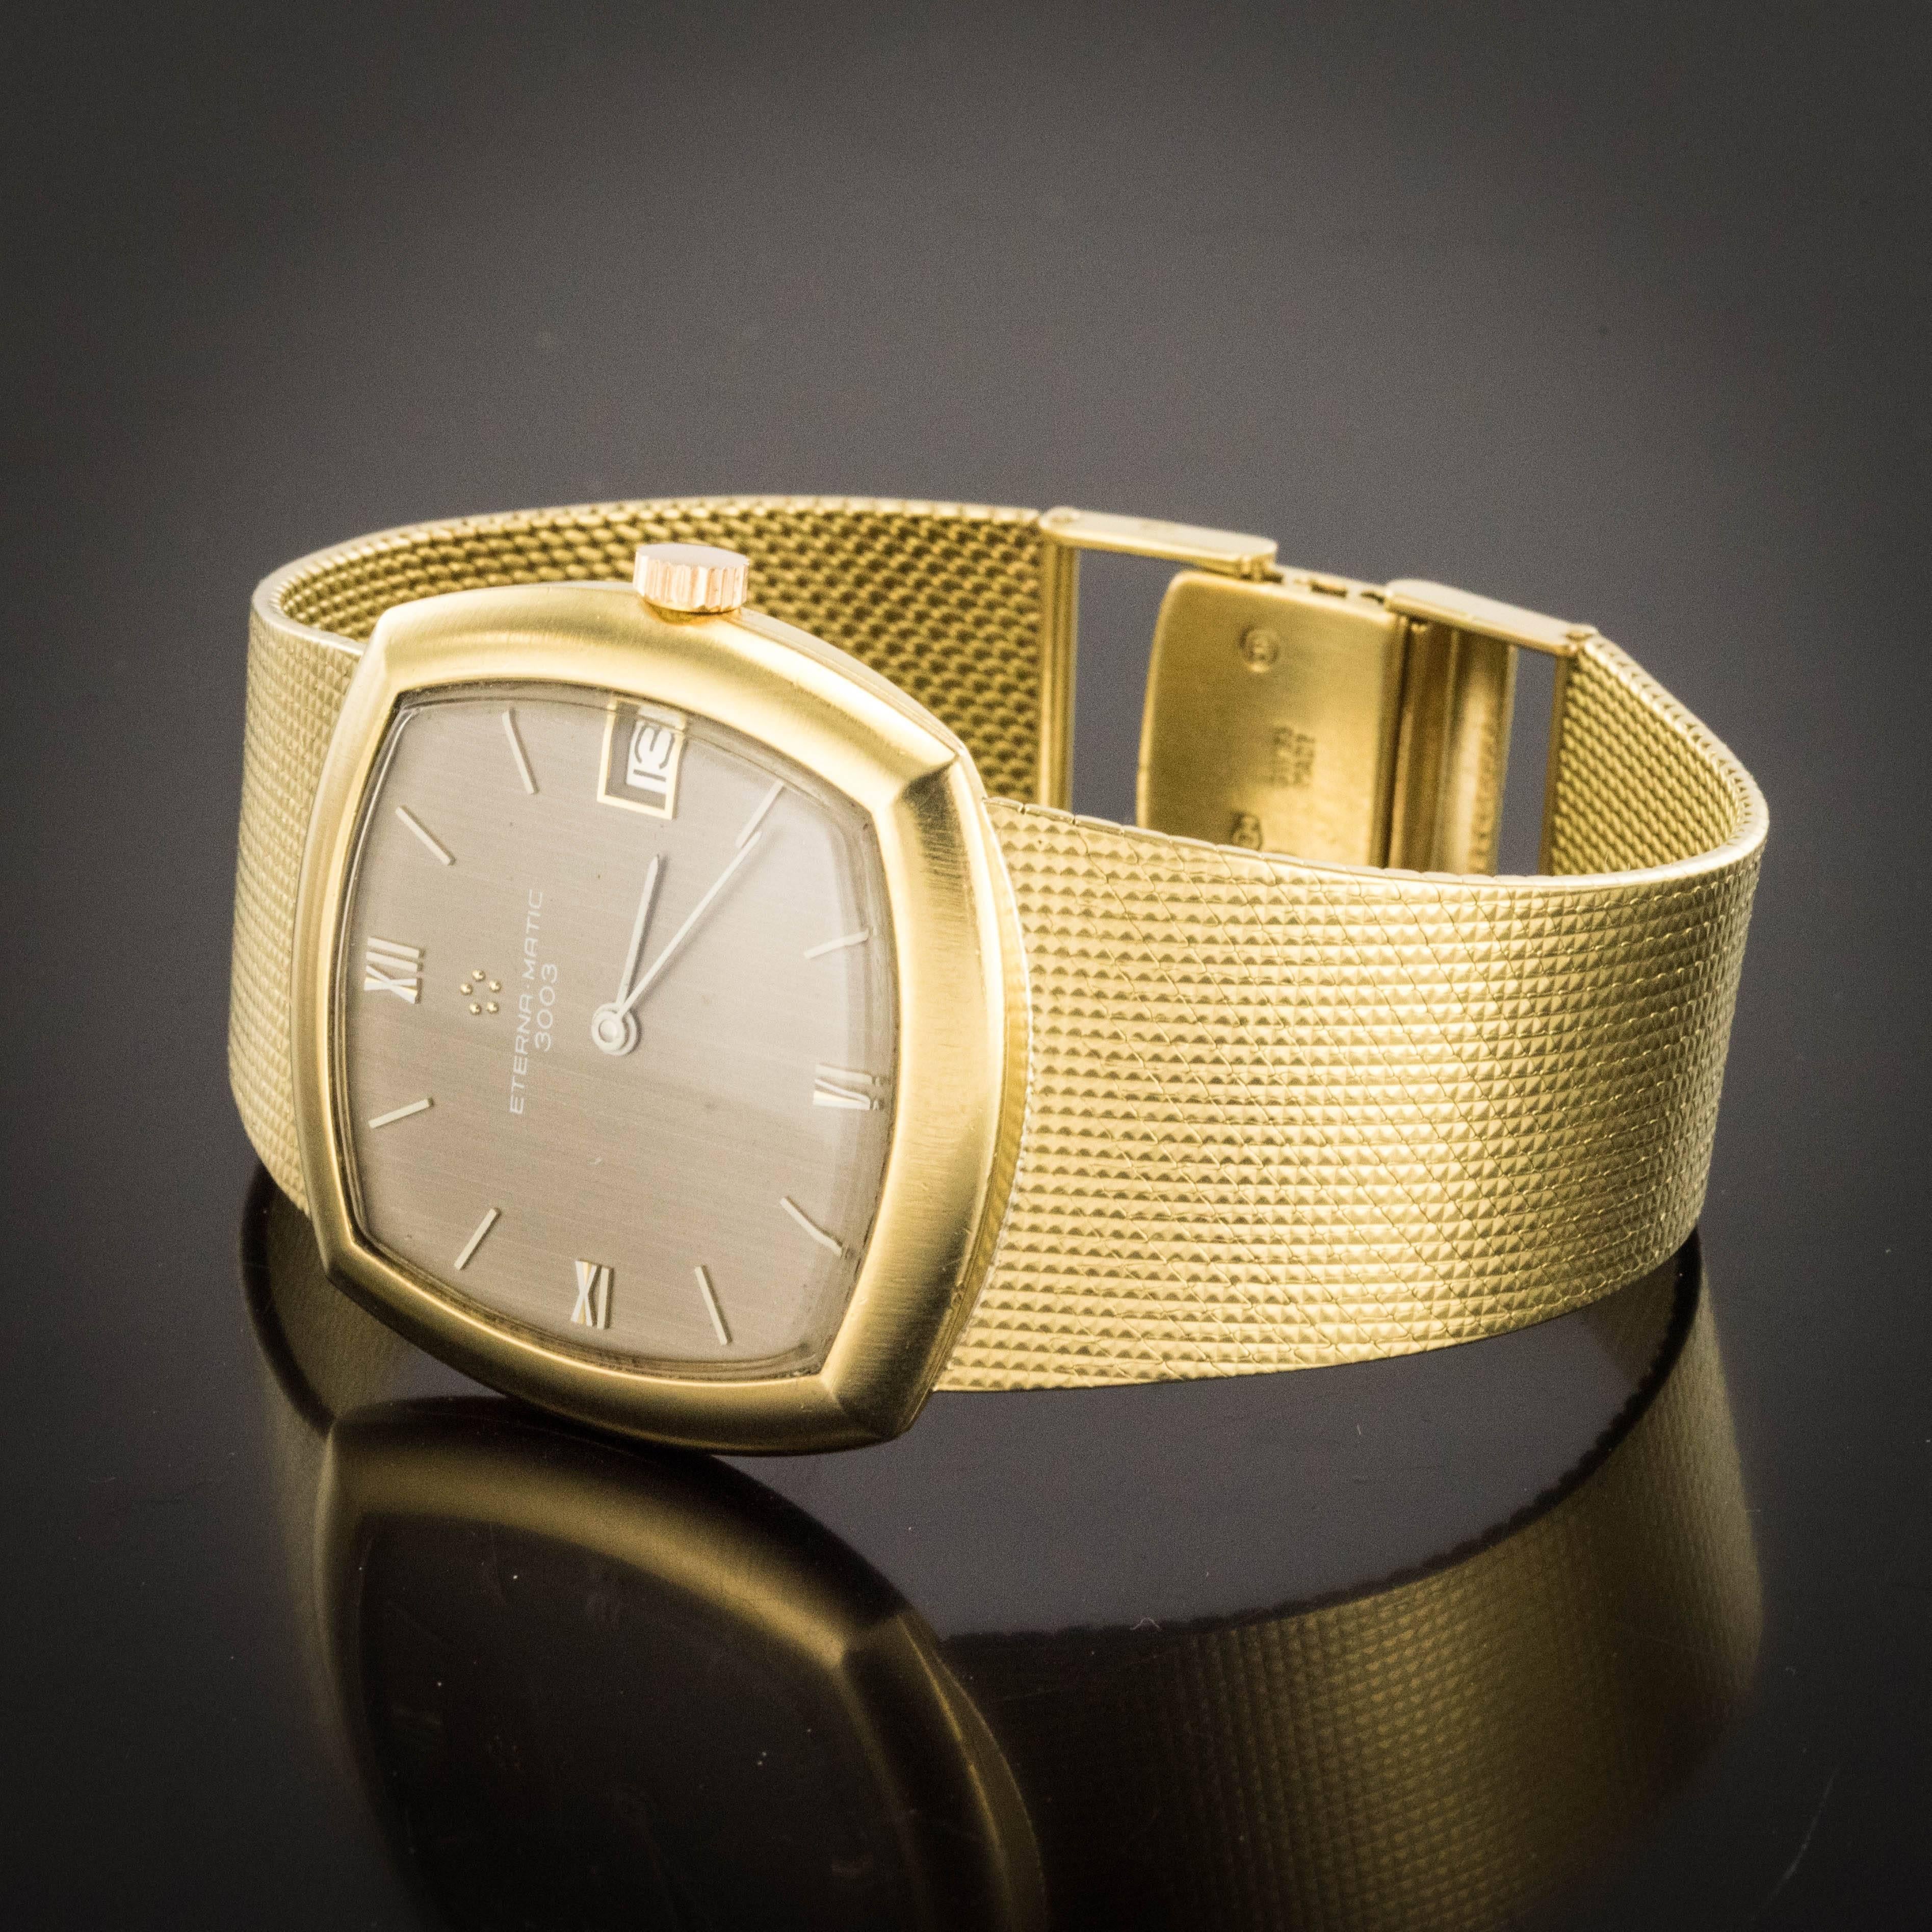 Uhr aus 18 Karat Gelbgold, Punzierung Eule und Rüsselkäfer.
Die quadratische Form dieser goldenen Vintage-Uhr ist ultraflach. Das Armband ist ein geflochtenes Netz ultra flach und flexibel. Der Verschluss befindet sich auf einer Skala.
Das